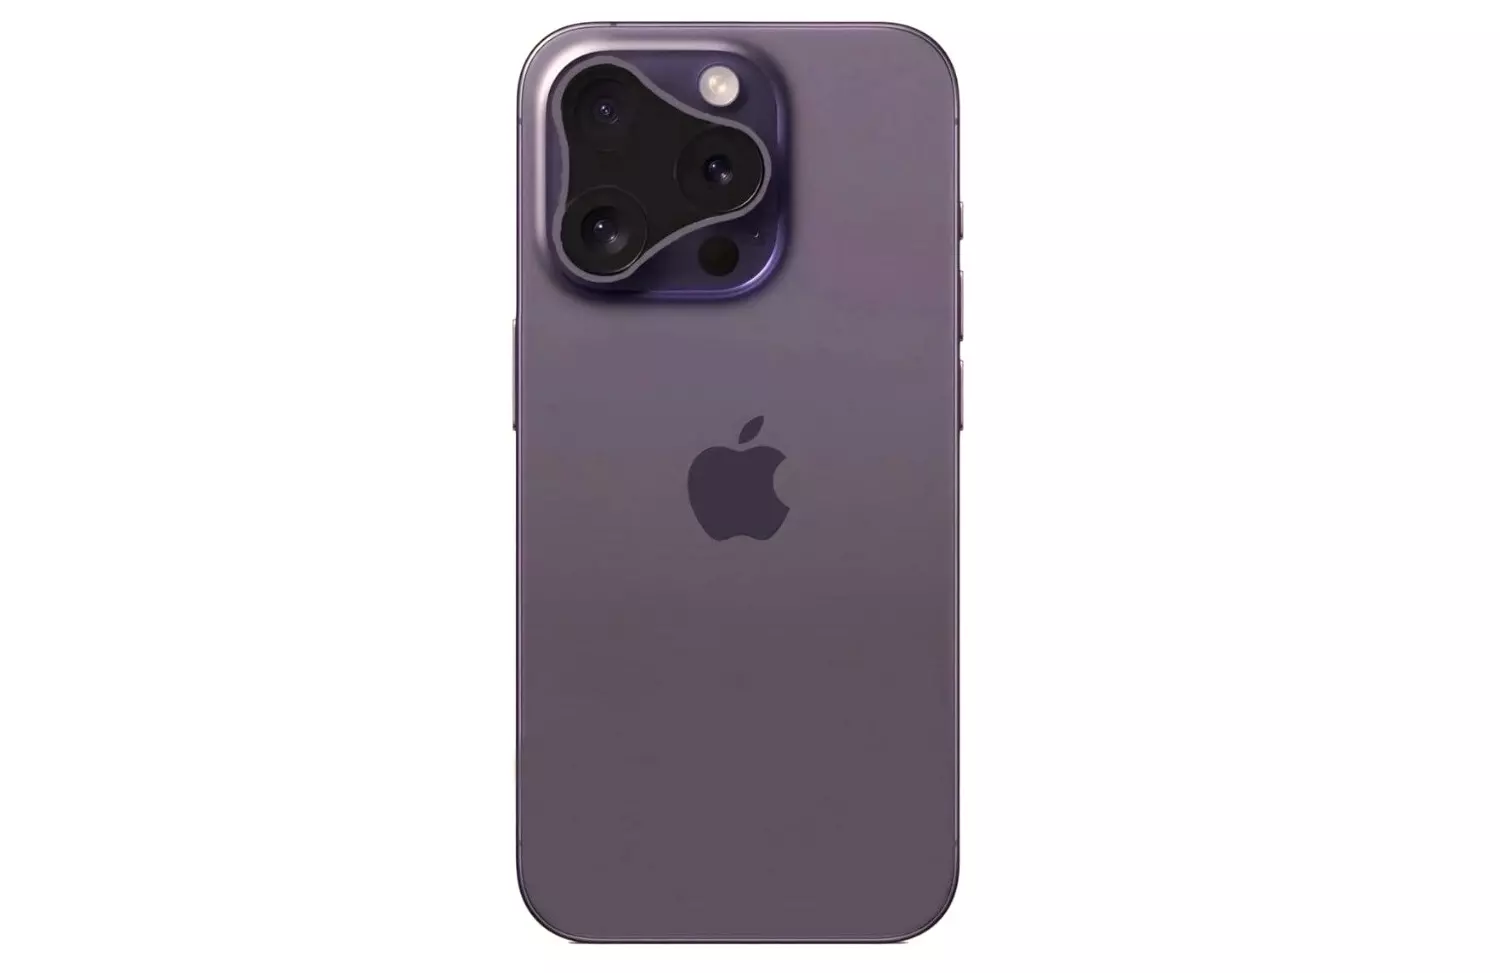 Похожую на спиннер форму Apple может использовать для дизайна камеры iPhone 16 Pro